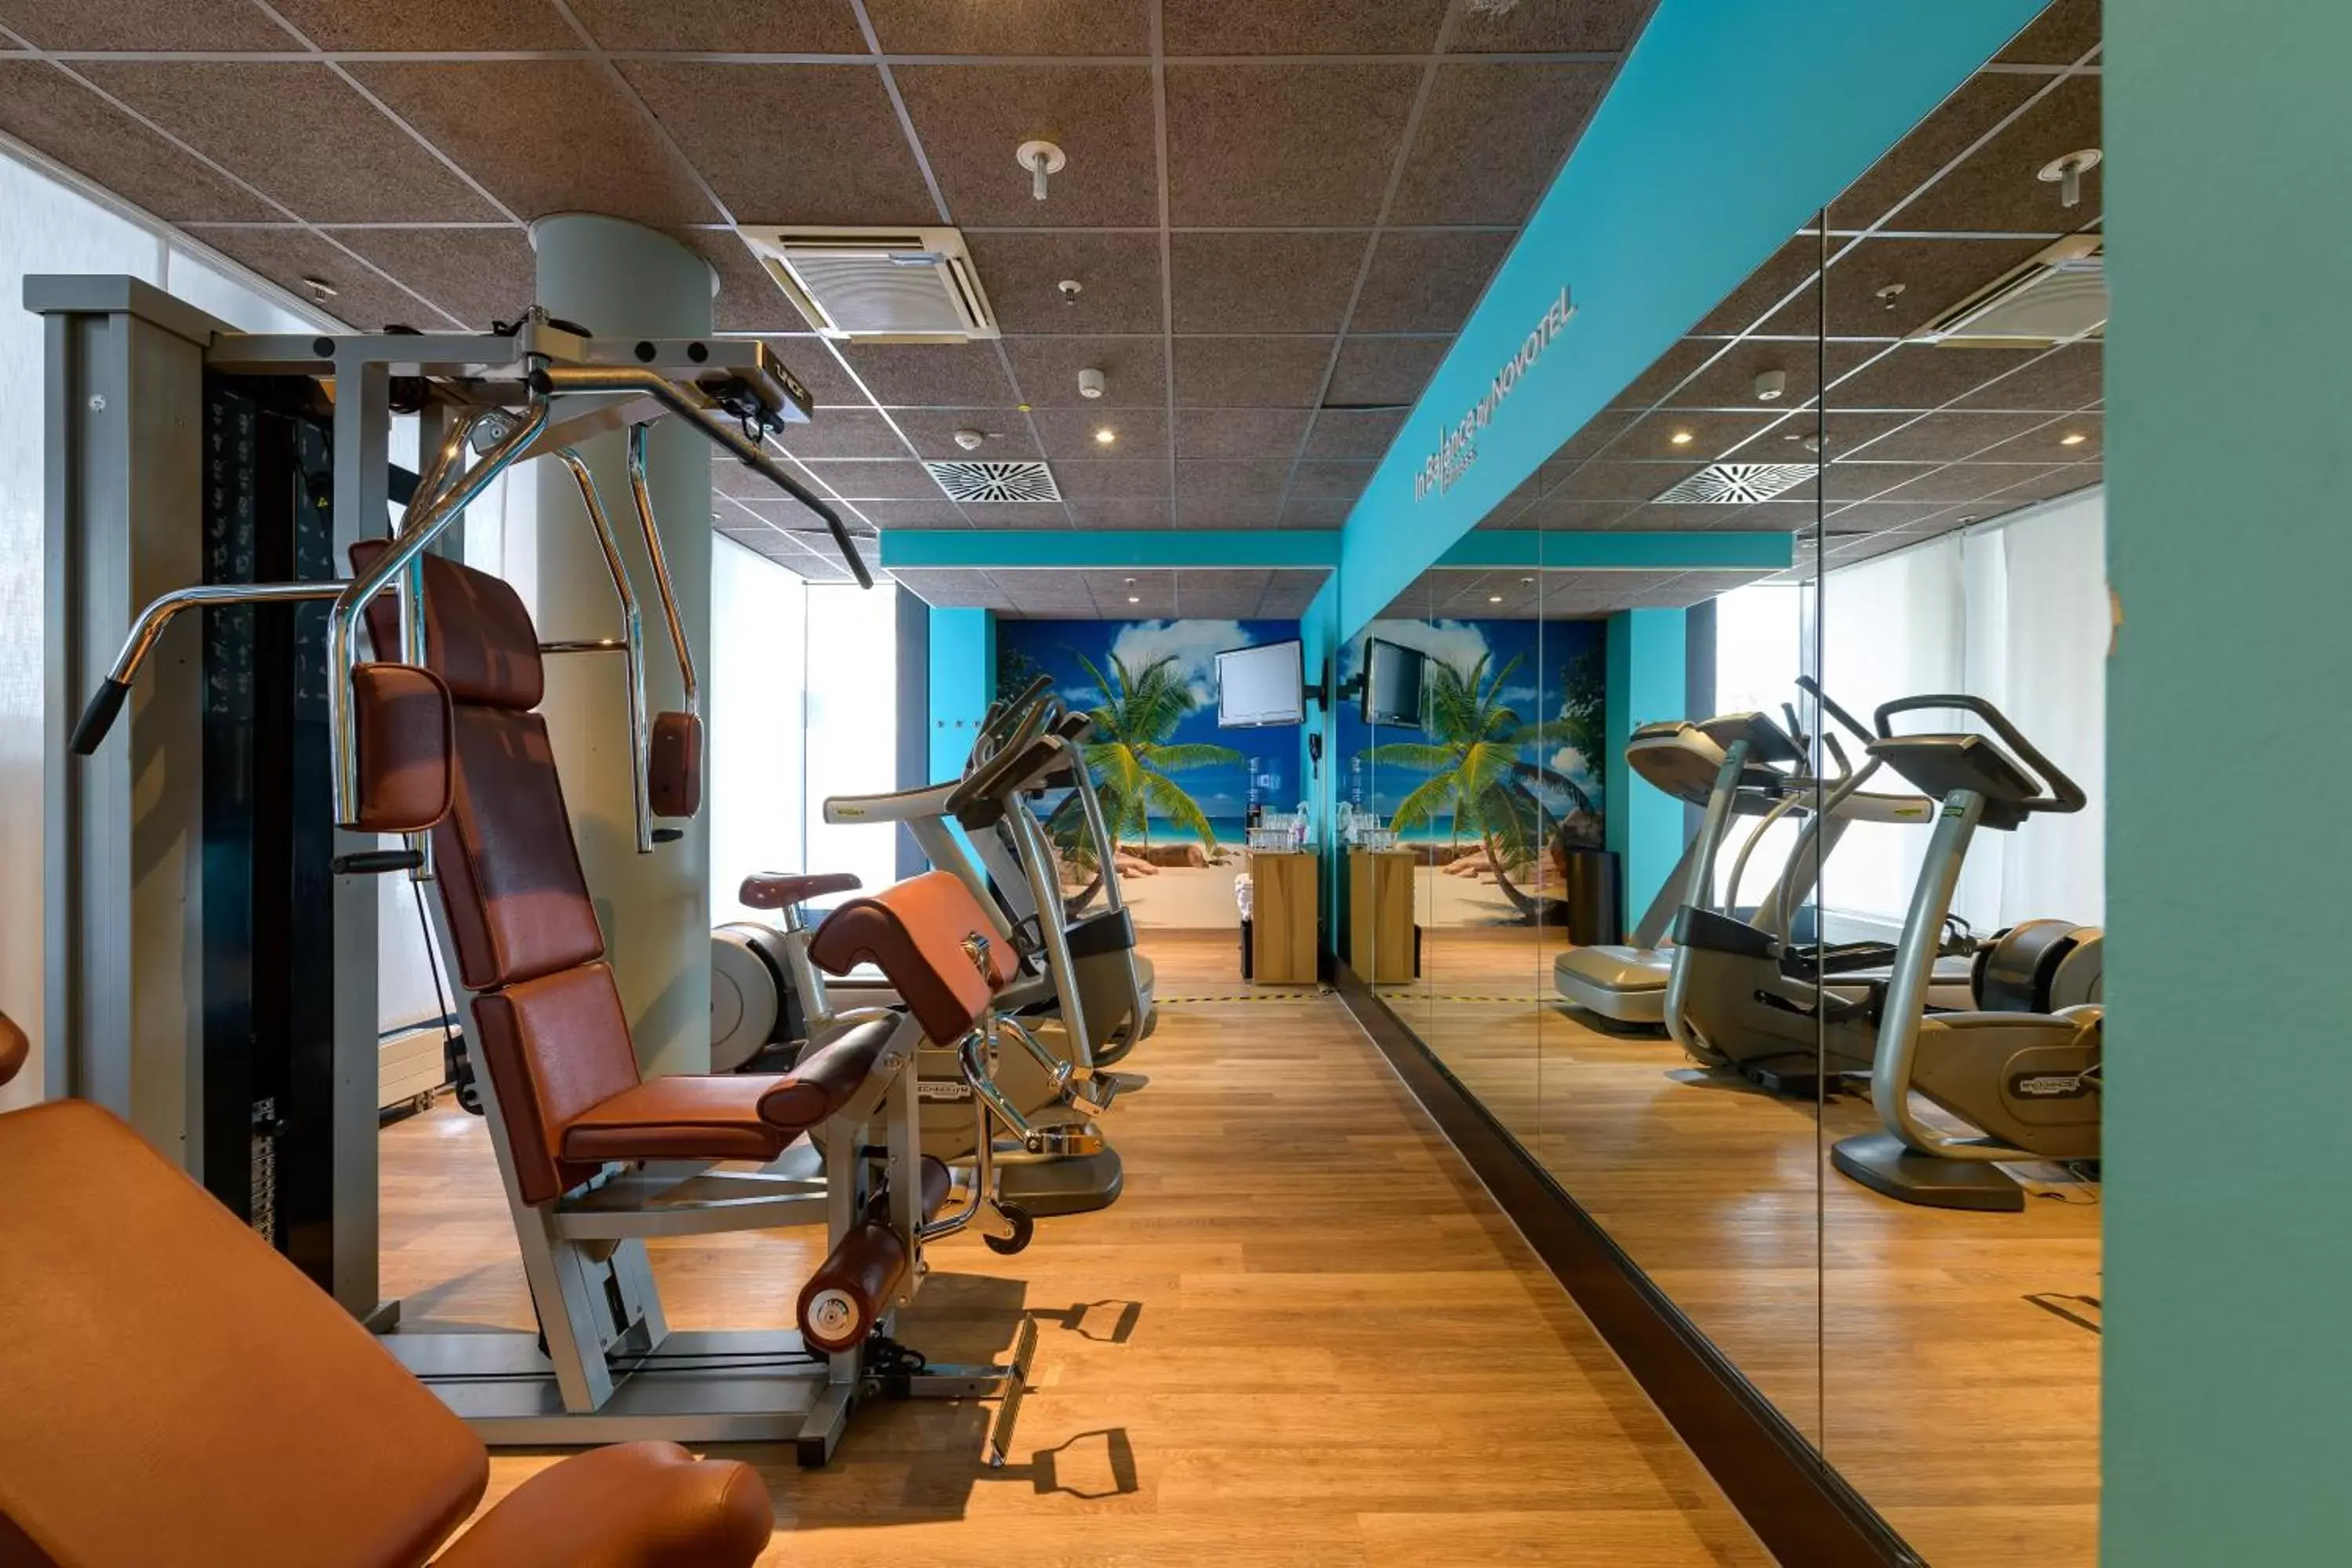 Fitness centre/facilities, Fitness Center/Facilities in Novotel Suites München Parkstadt Schwabing